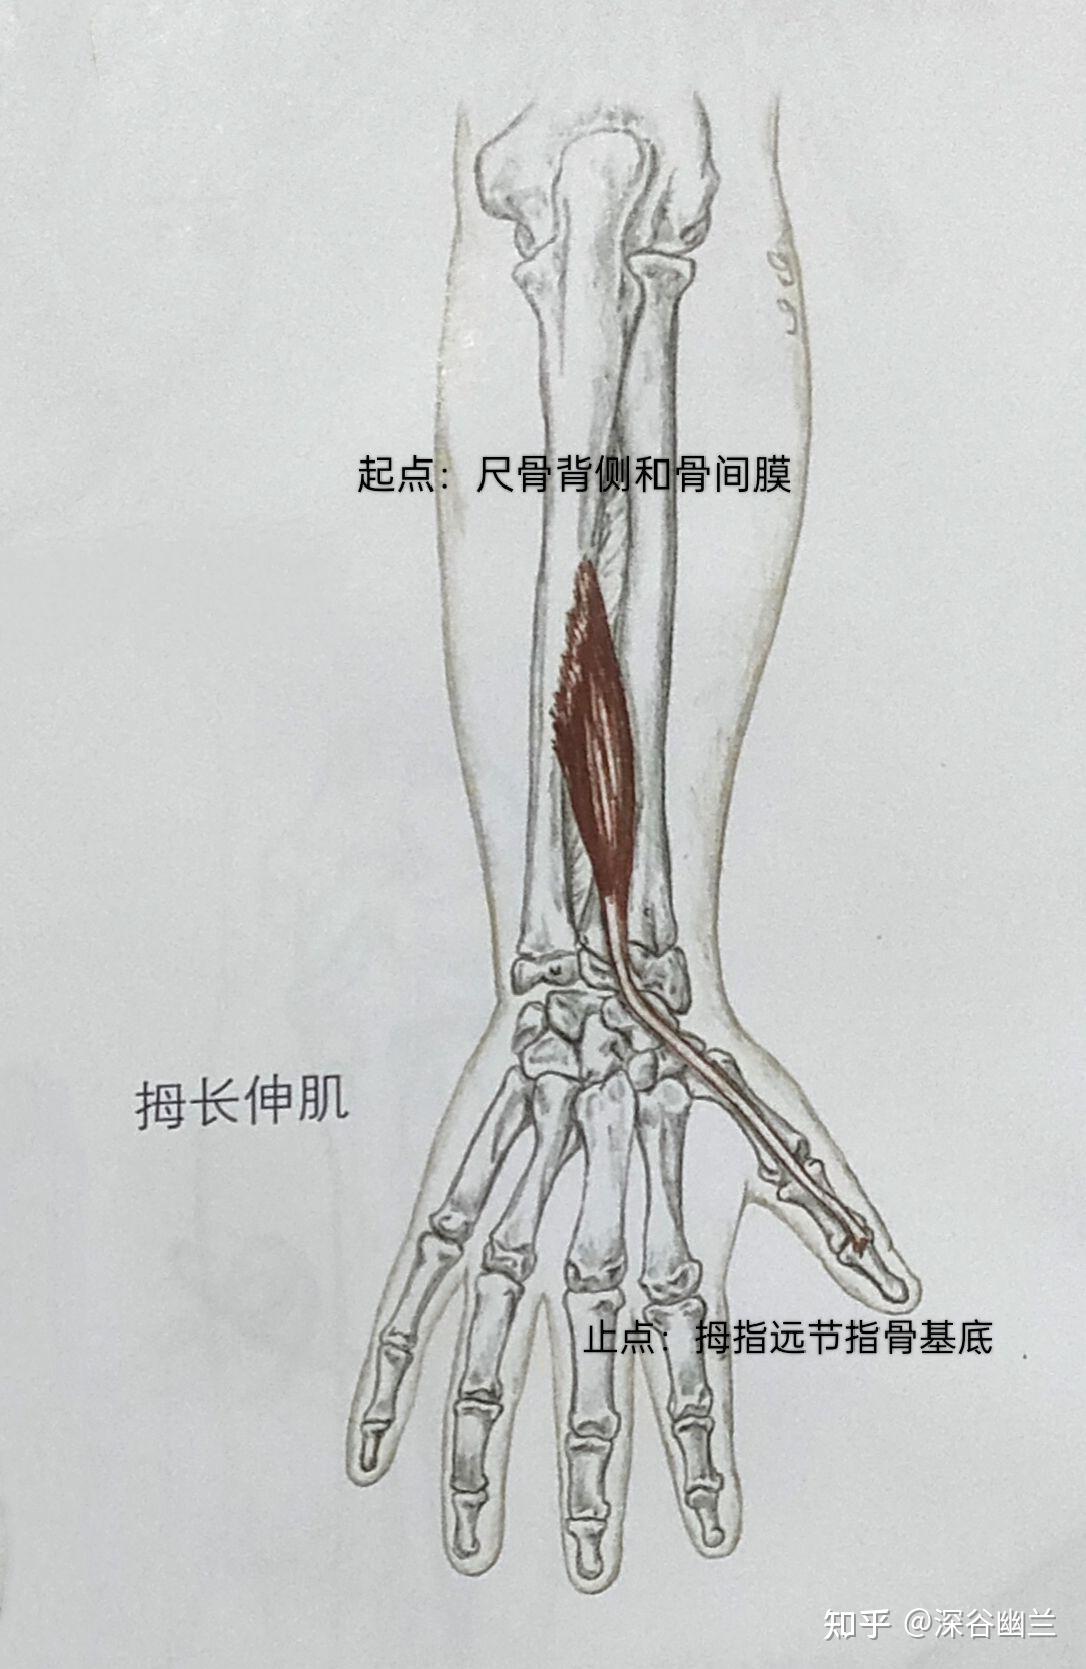 参与腕外展(桡偏)动作的肌肉有:桡侧腕长伸肌,拇长伸肌,拇长屈肌(协助